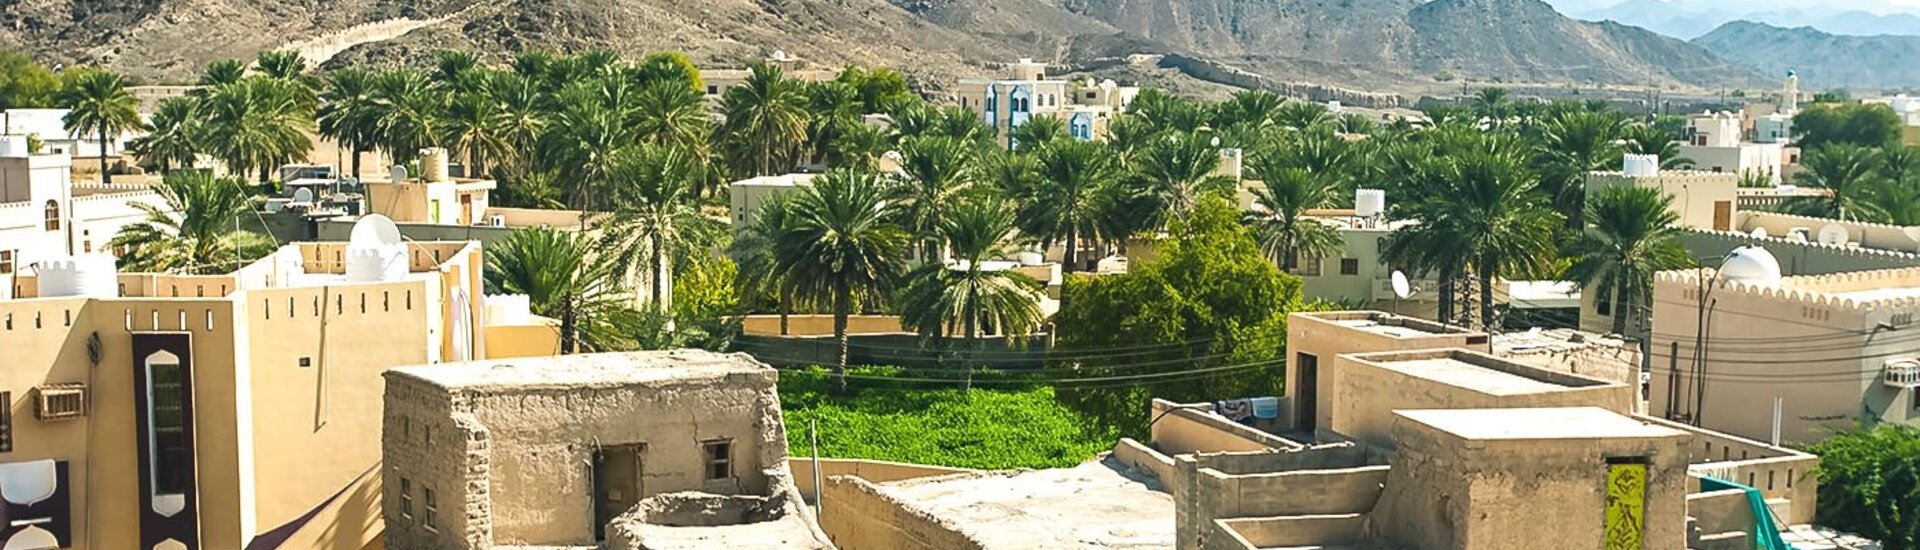 Ein Dorf im Wadi Tiwi, Oman